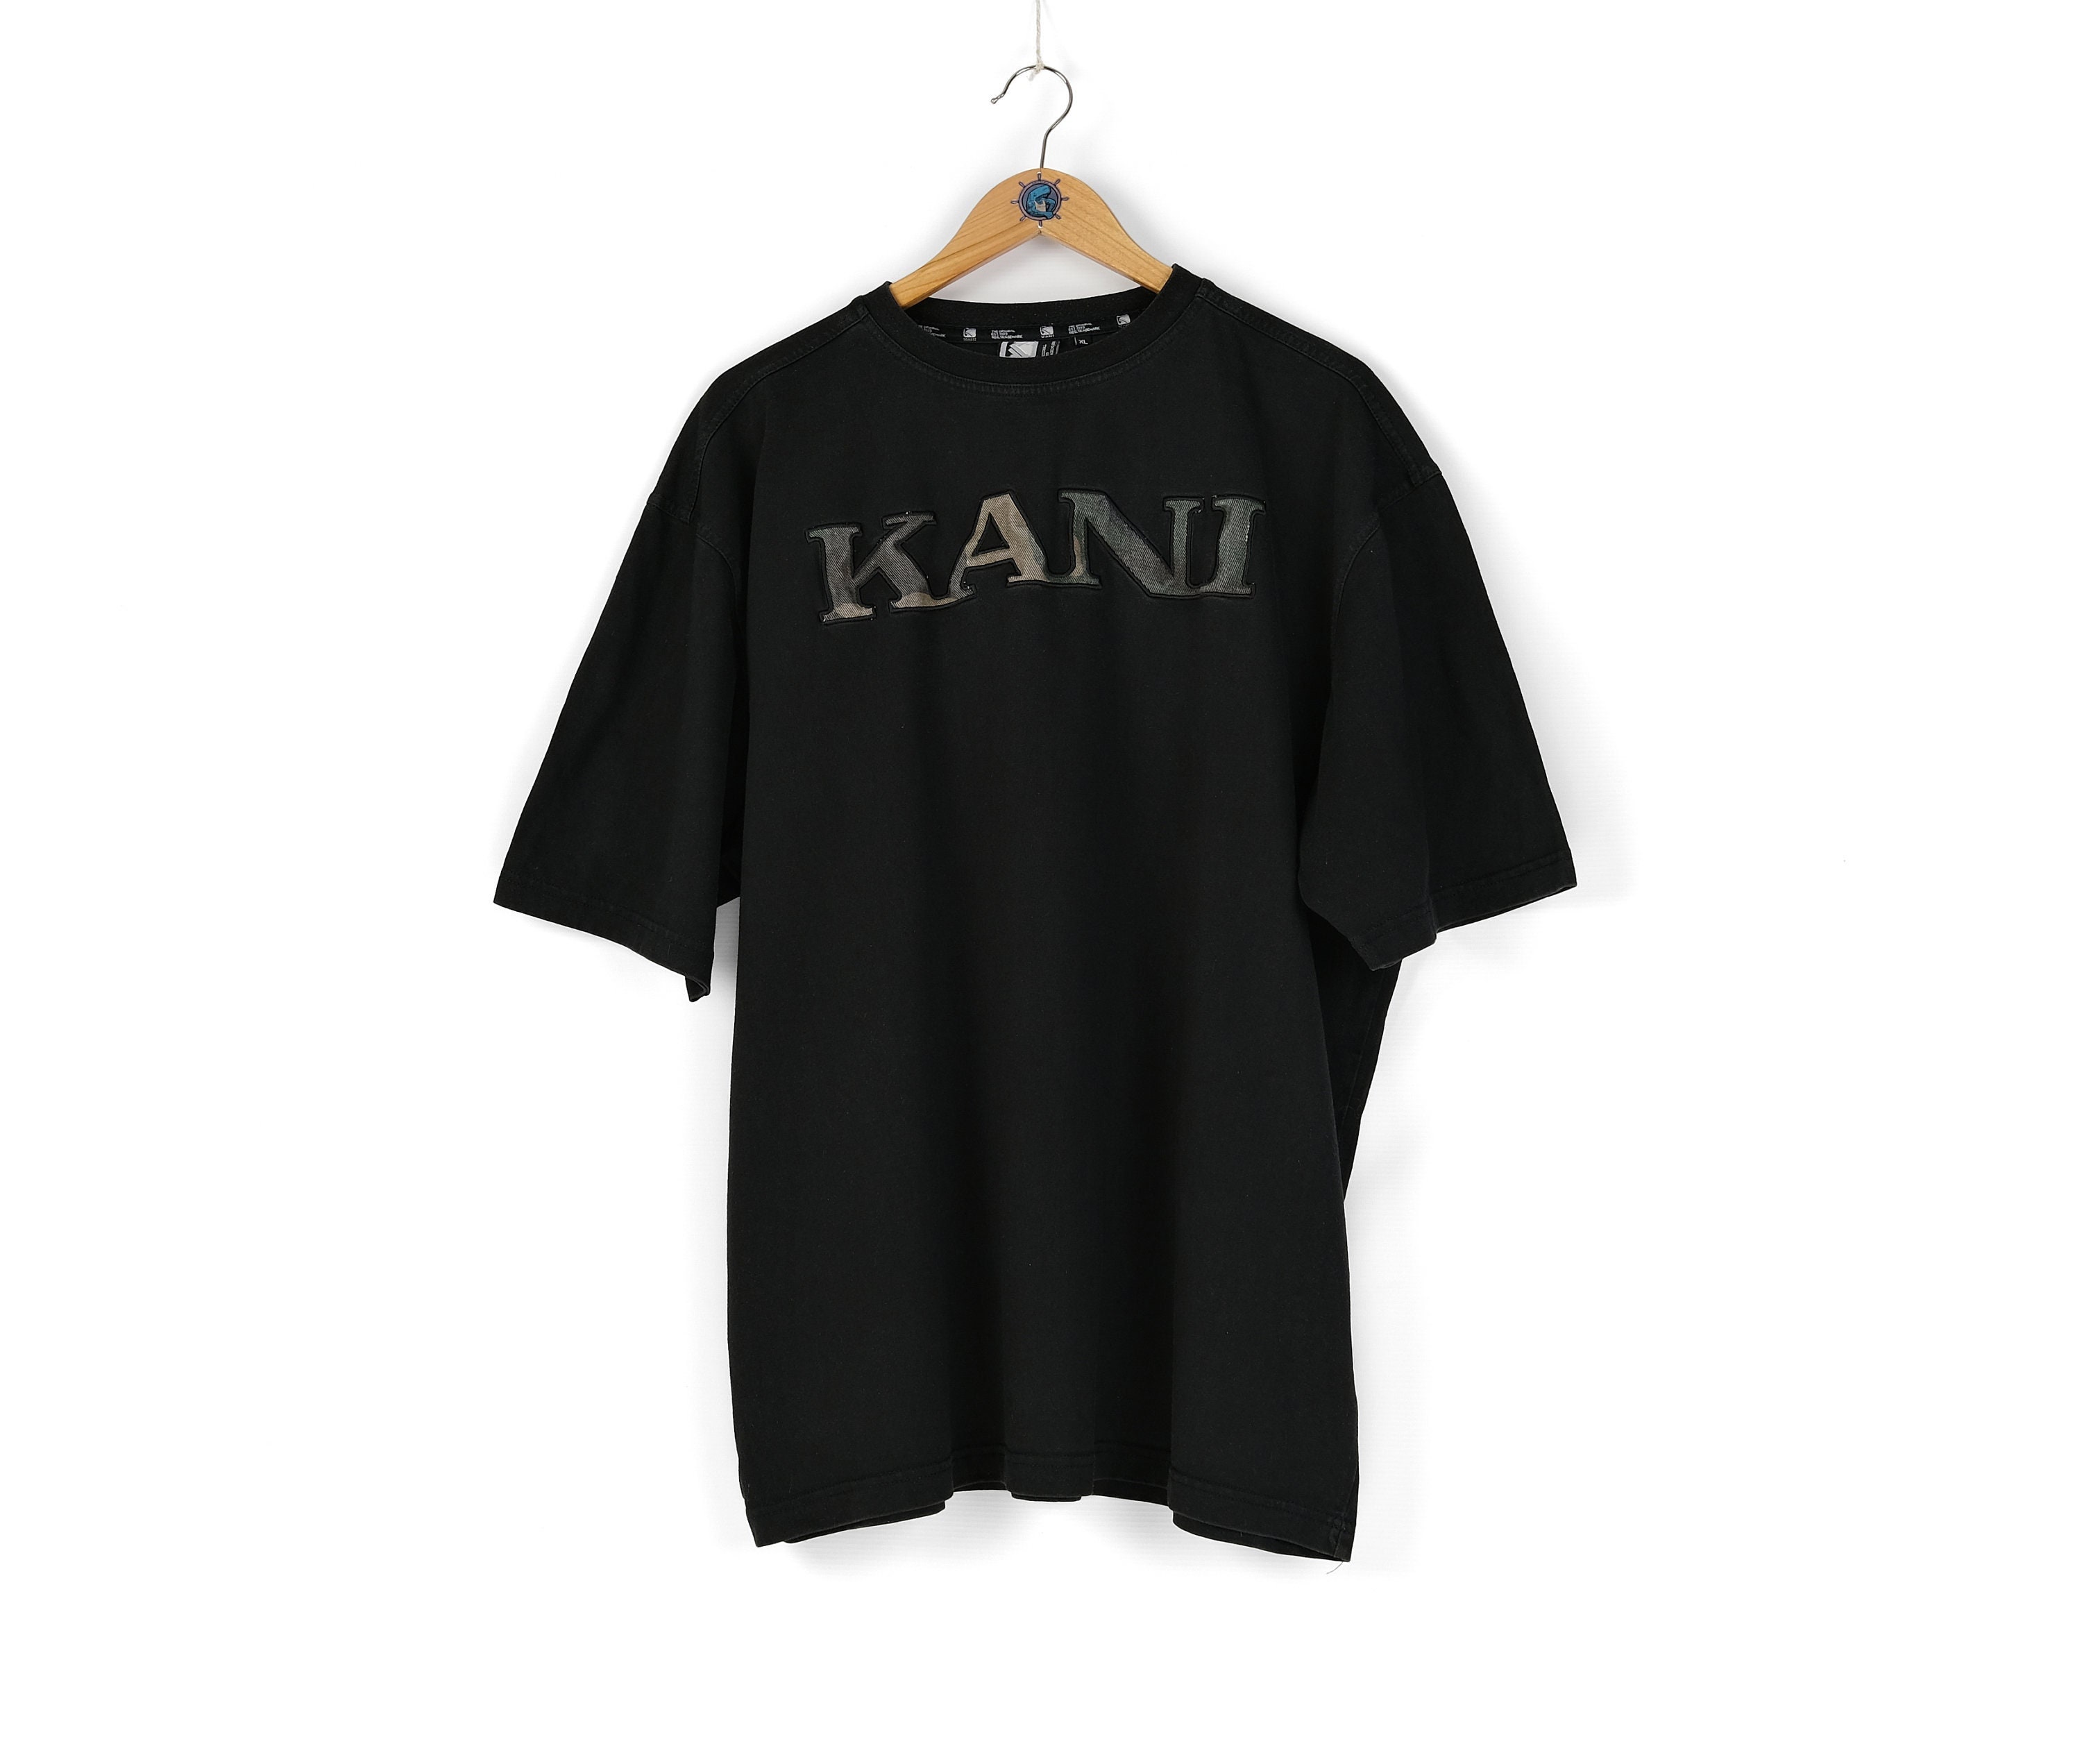 Candles Meal poets Vintage Men's KARL KANI Big Embroidered Logo Black T-shirt - Etsy